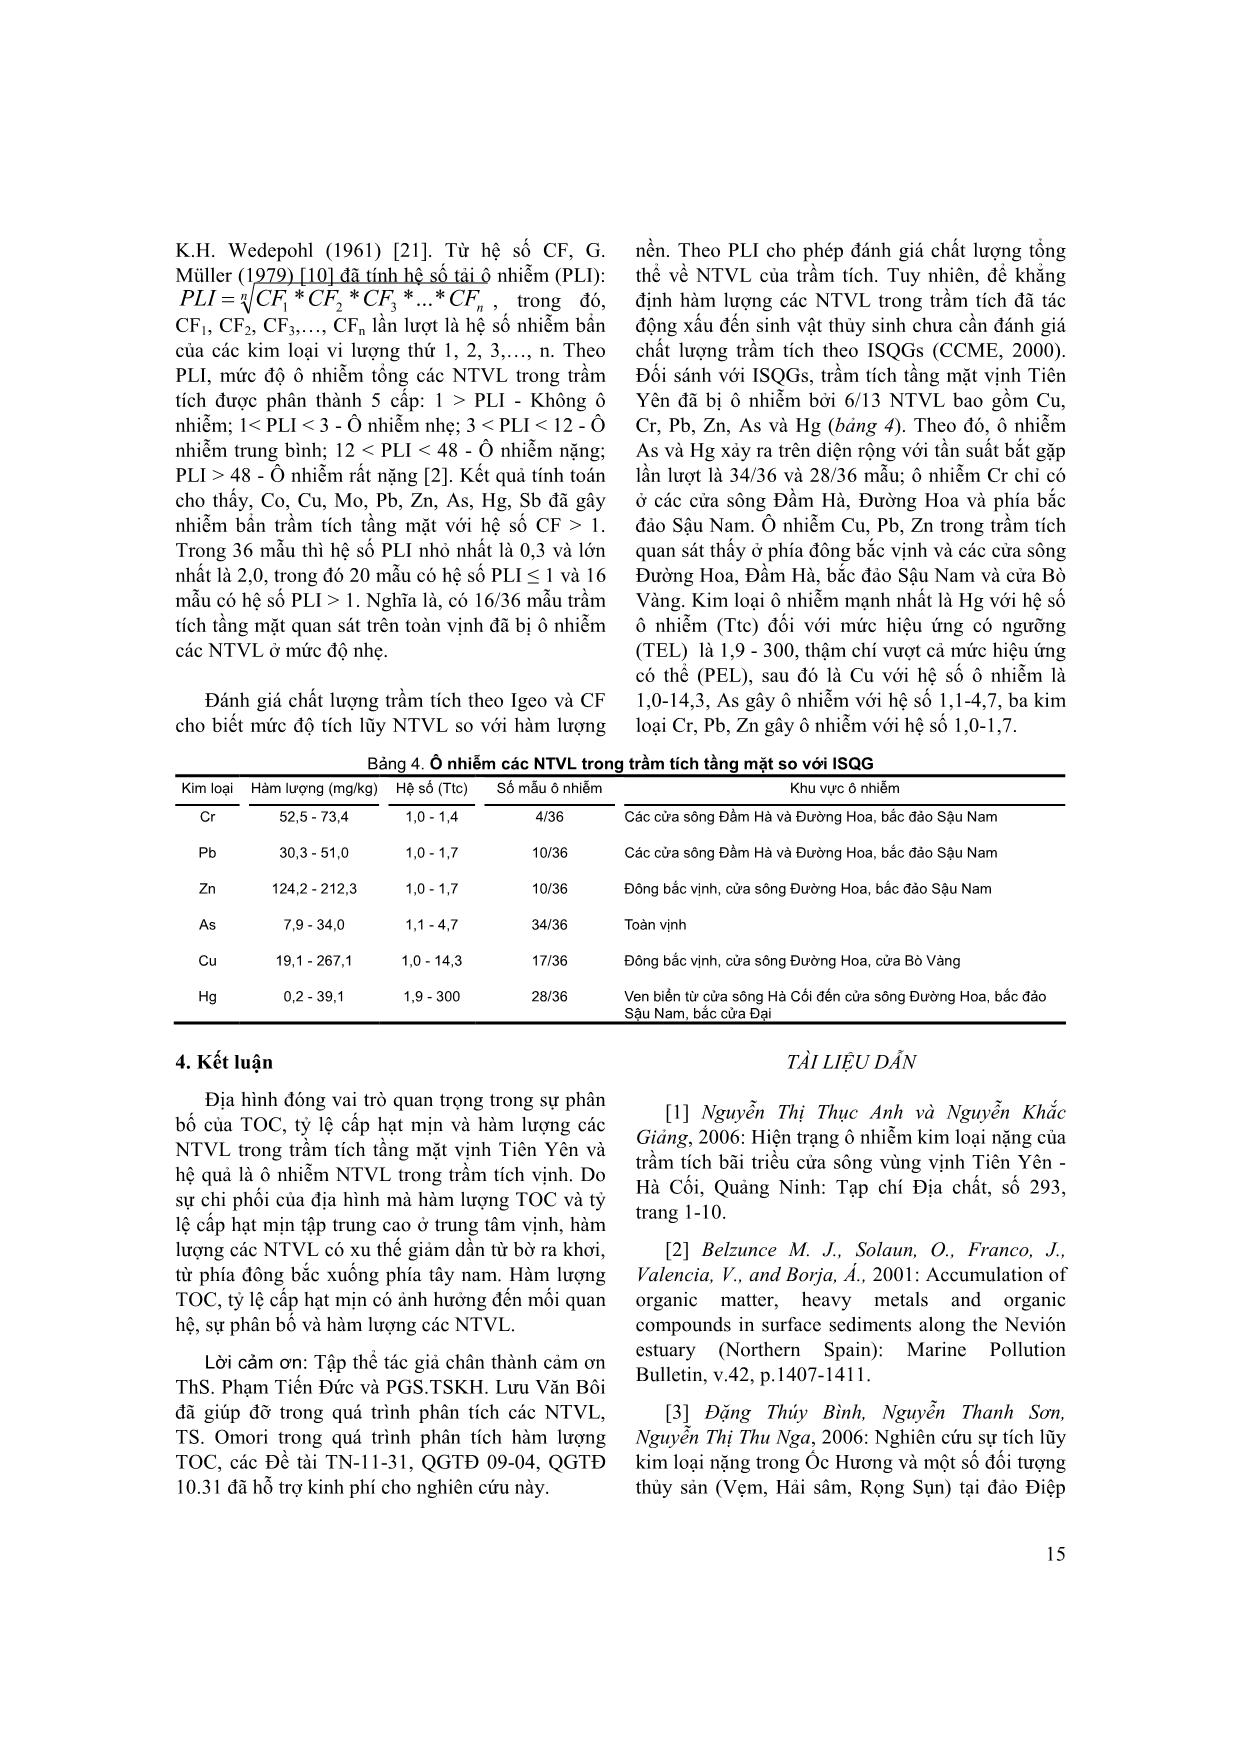 Đặc điểm phân bố các nguyên tố vi lượng trong trầm tích tầng mặt vịnh Tiên Yên trang 6